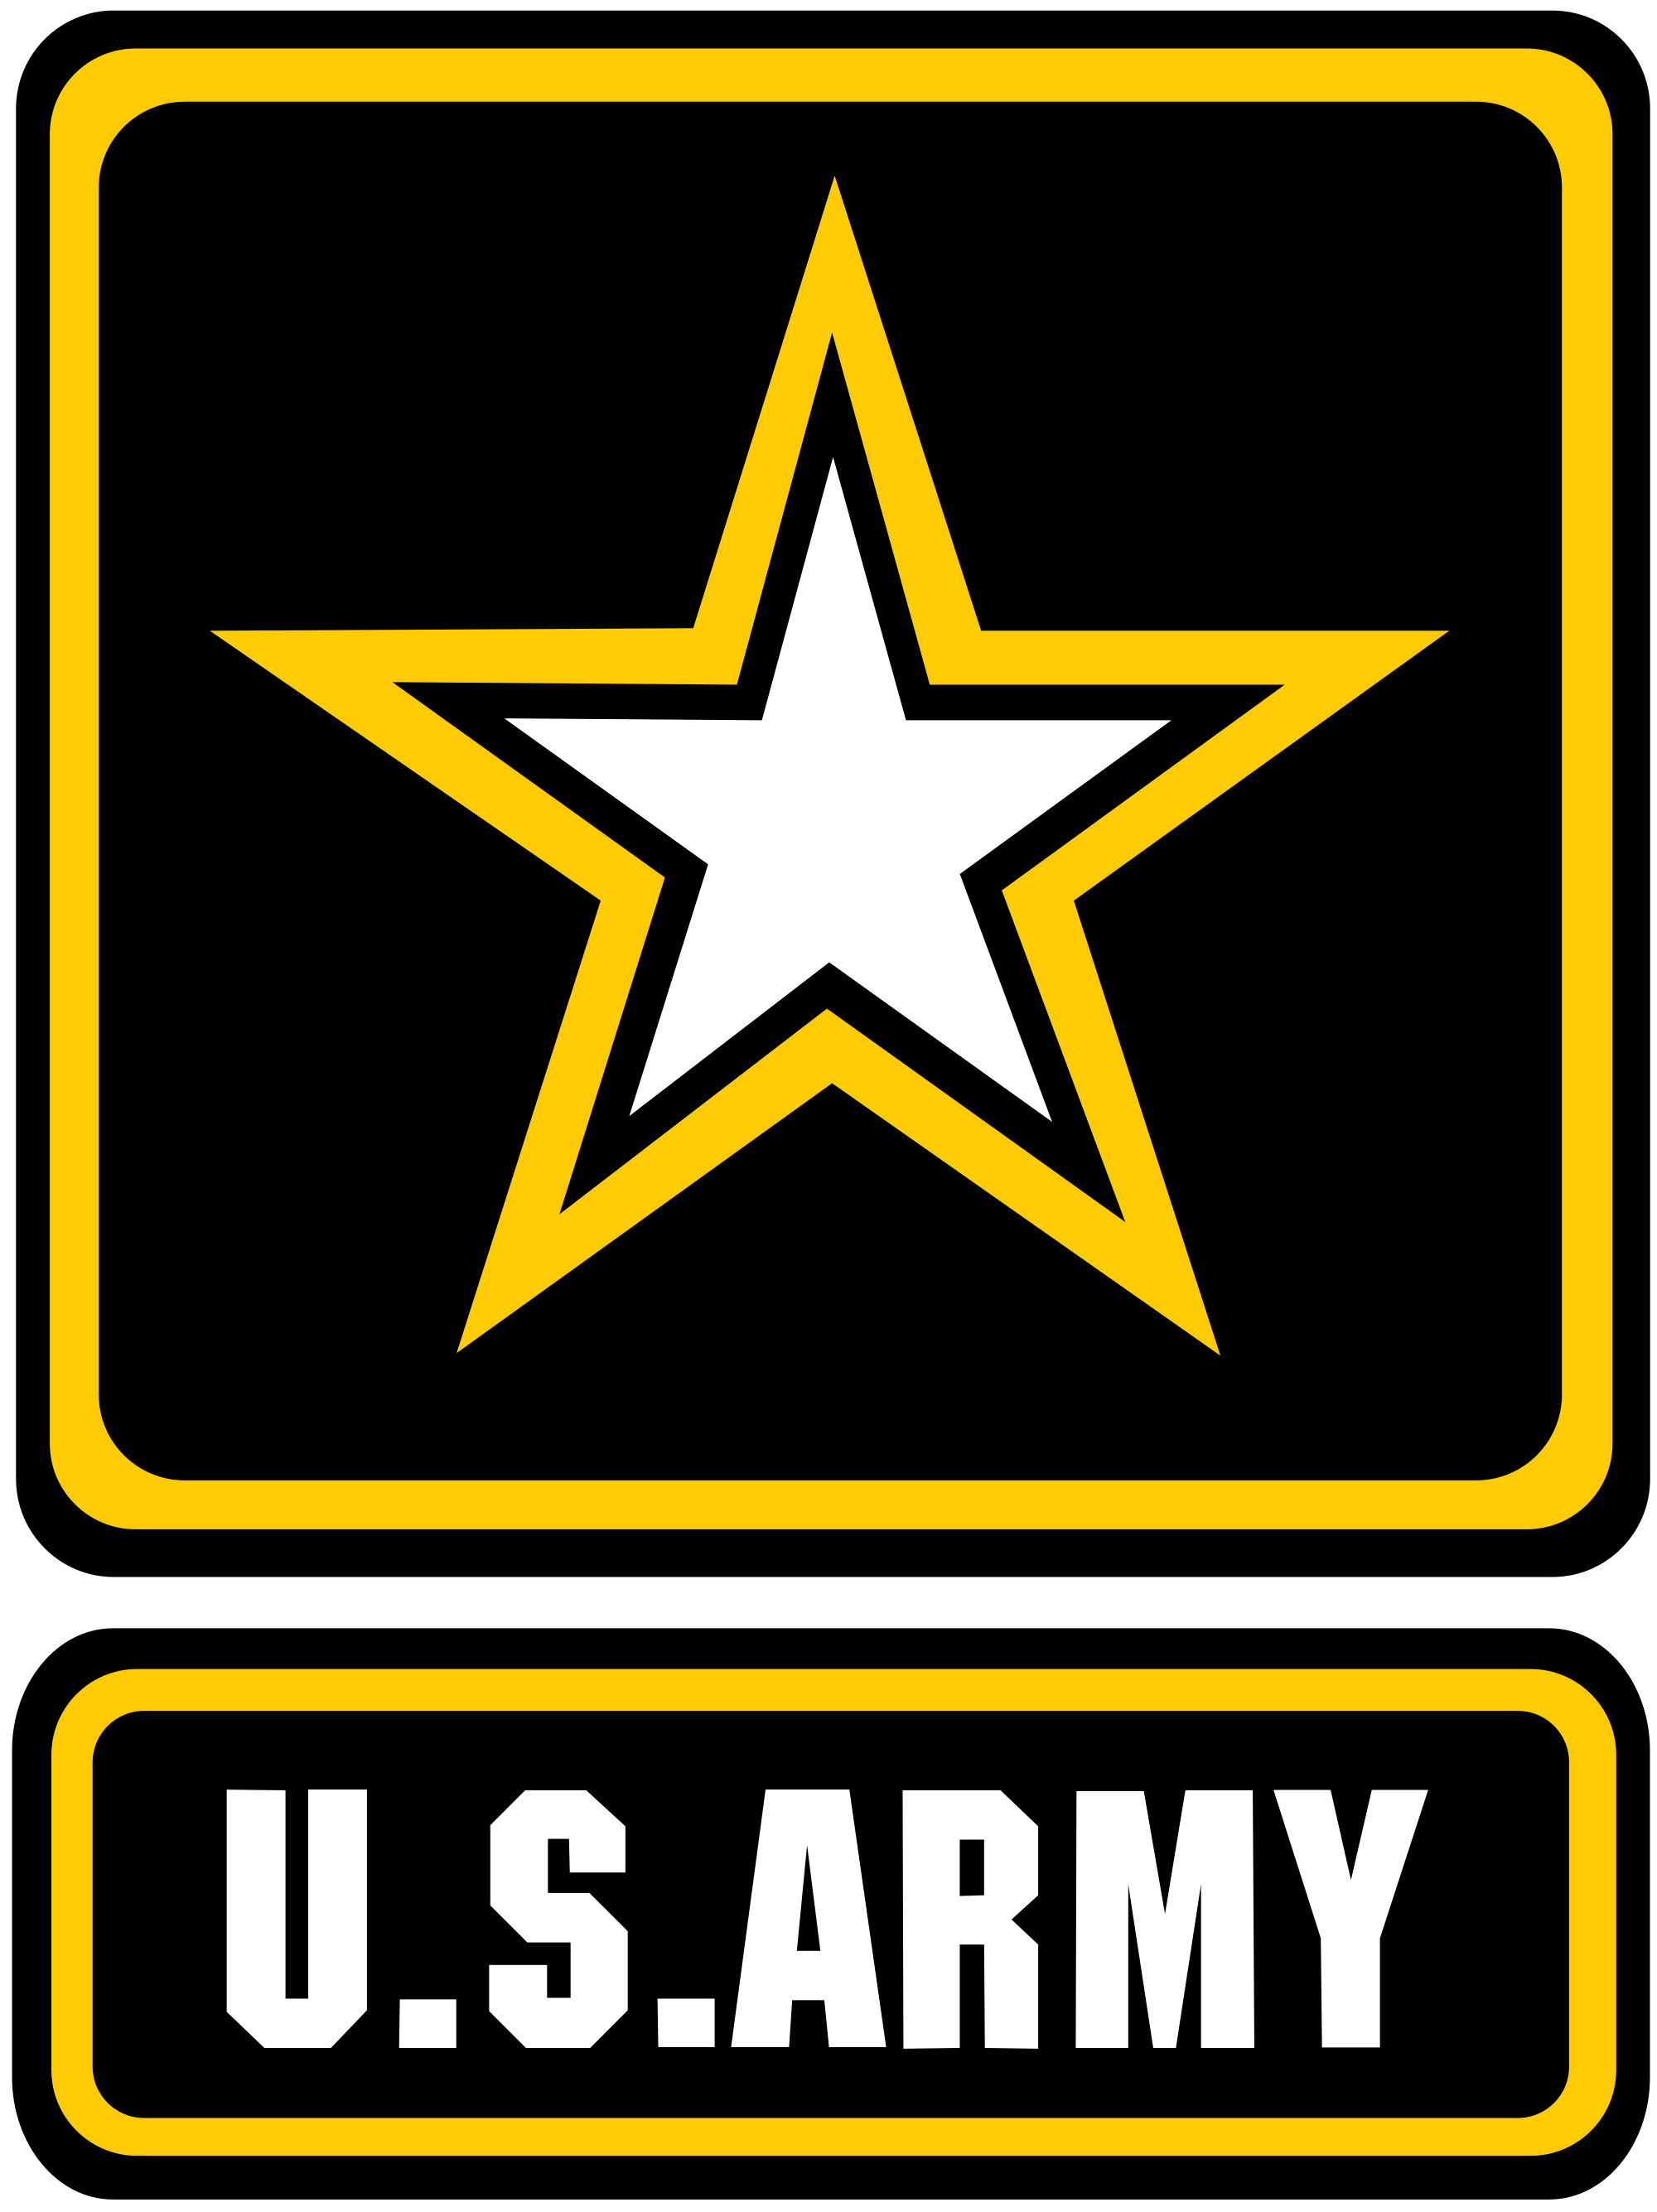 Army logo Us army emblem clipart logo